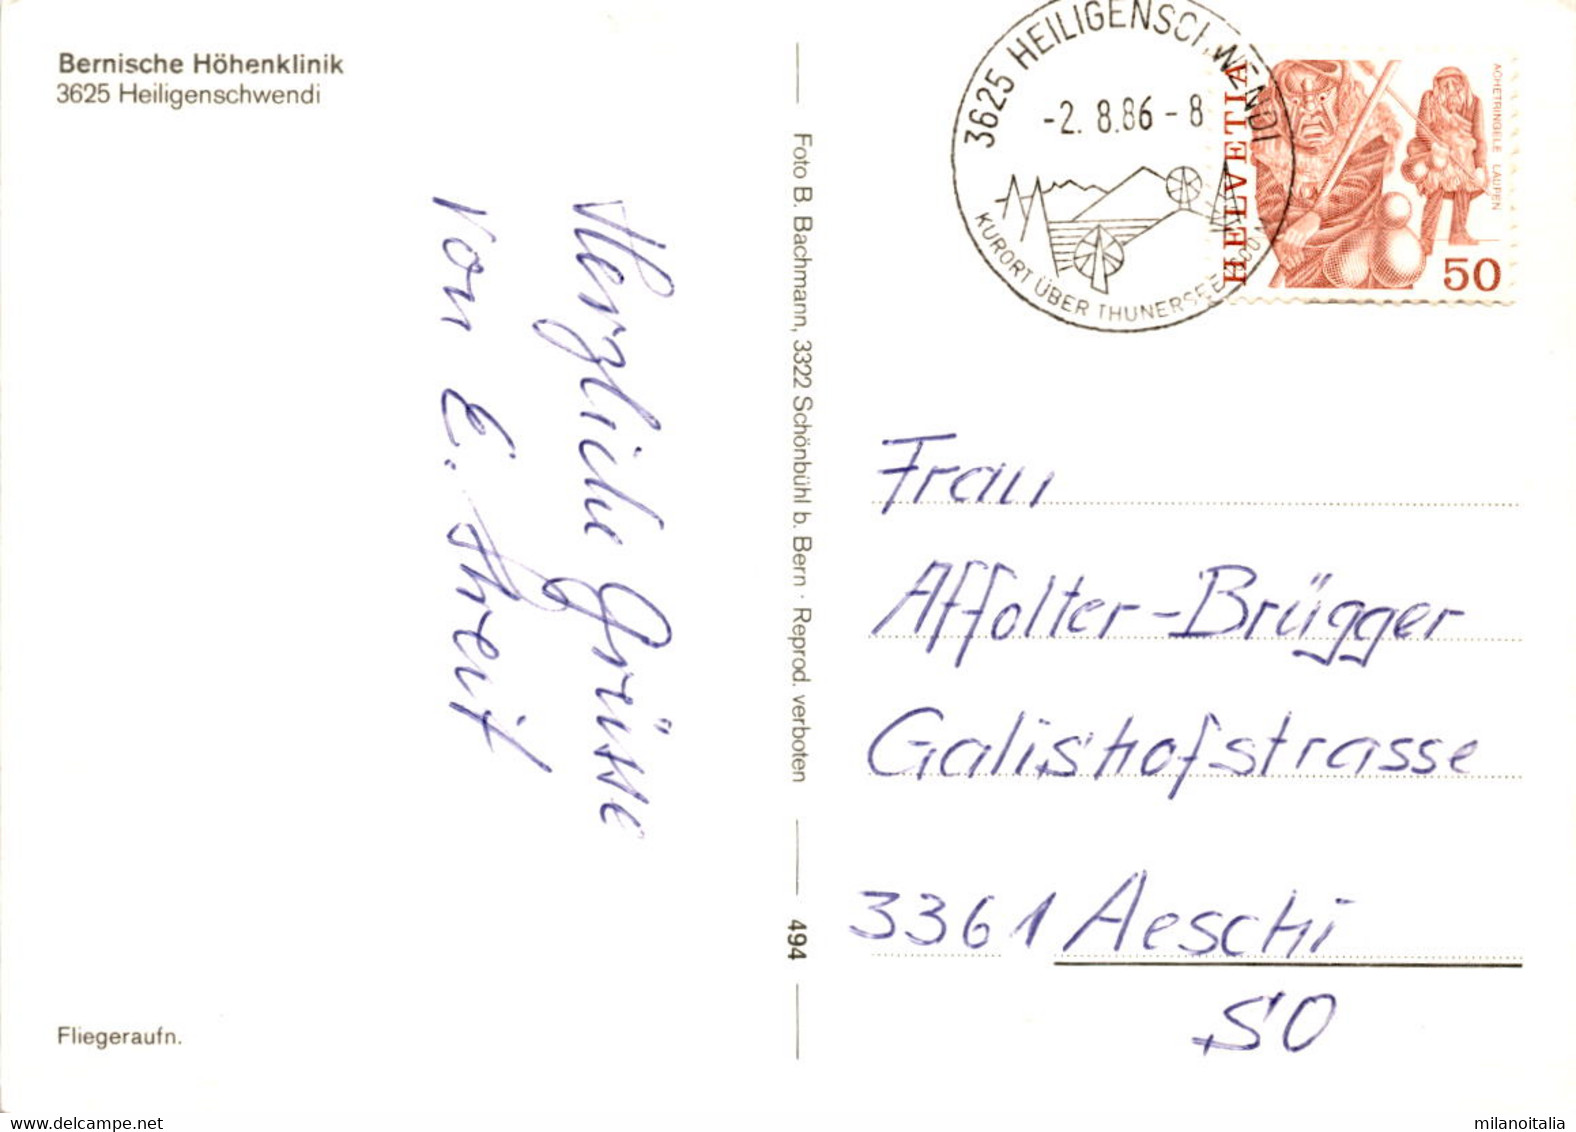 Bernische Höhenklinik - Heiligenschwendi - Fliegeraufnahme (494) * 2. 8. 1986 - Heiligenschwendi